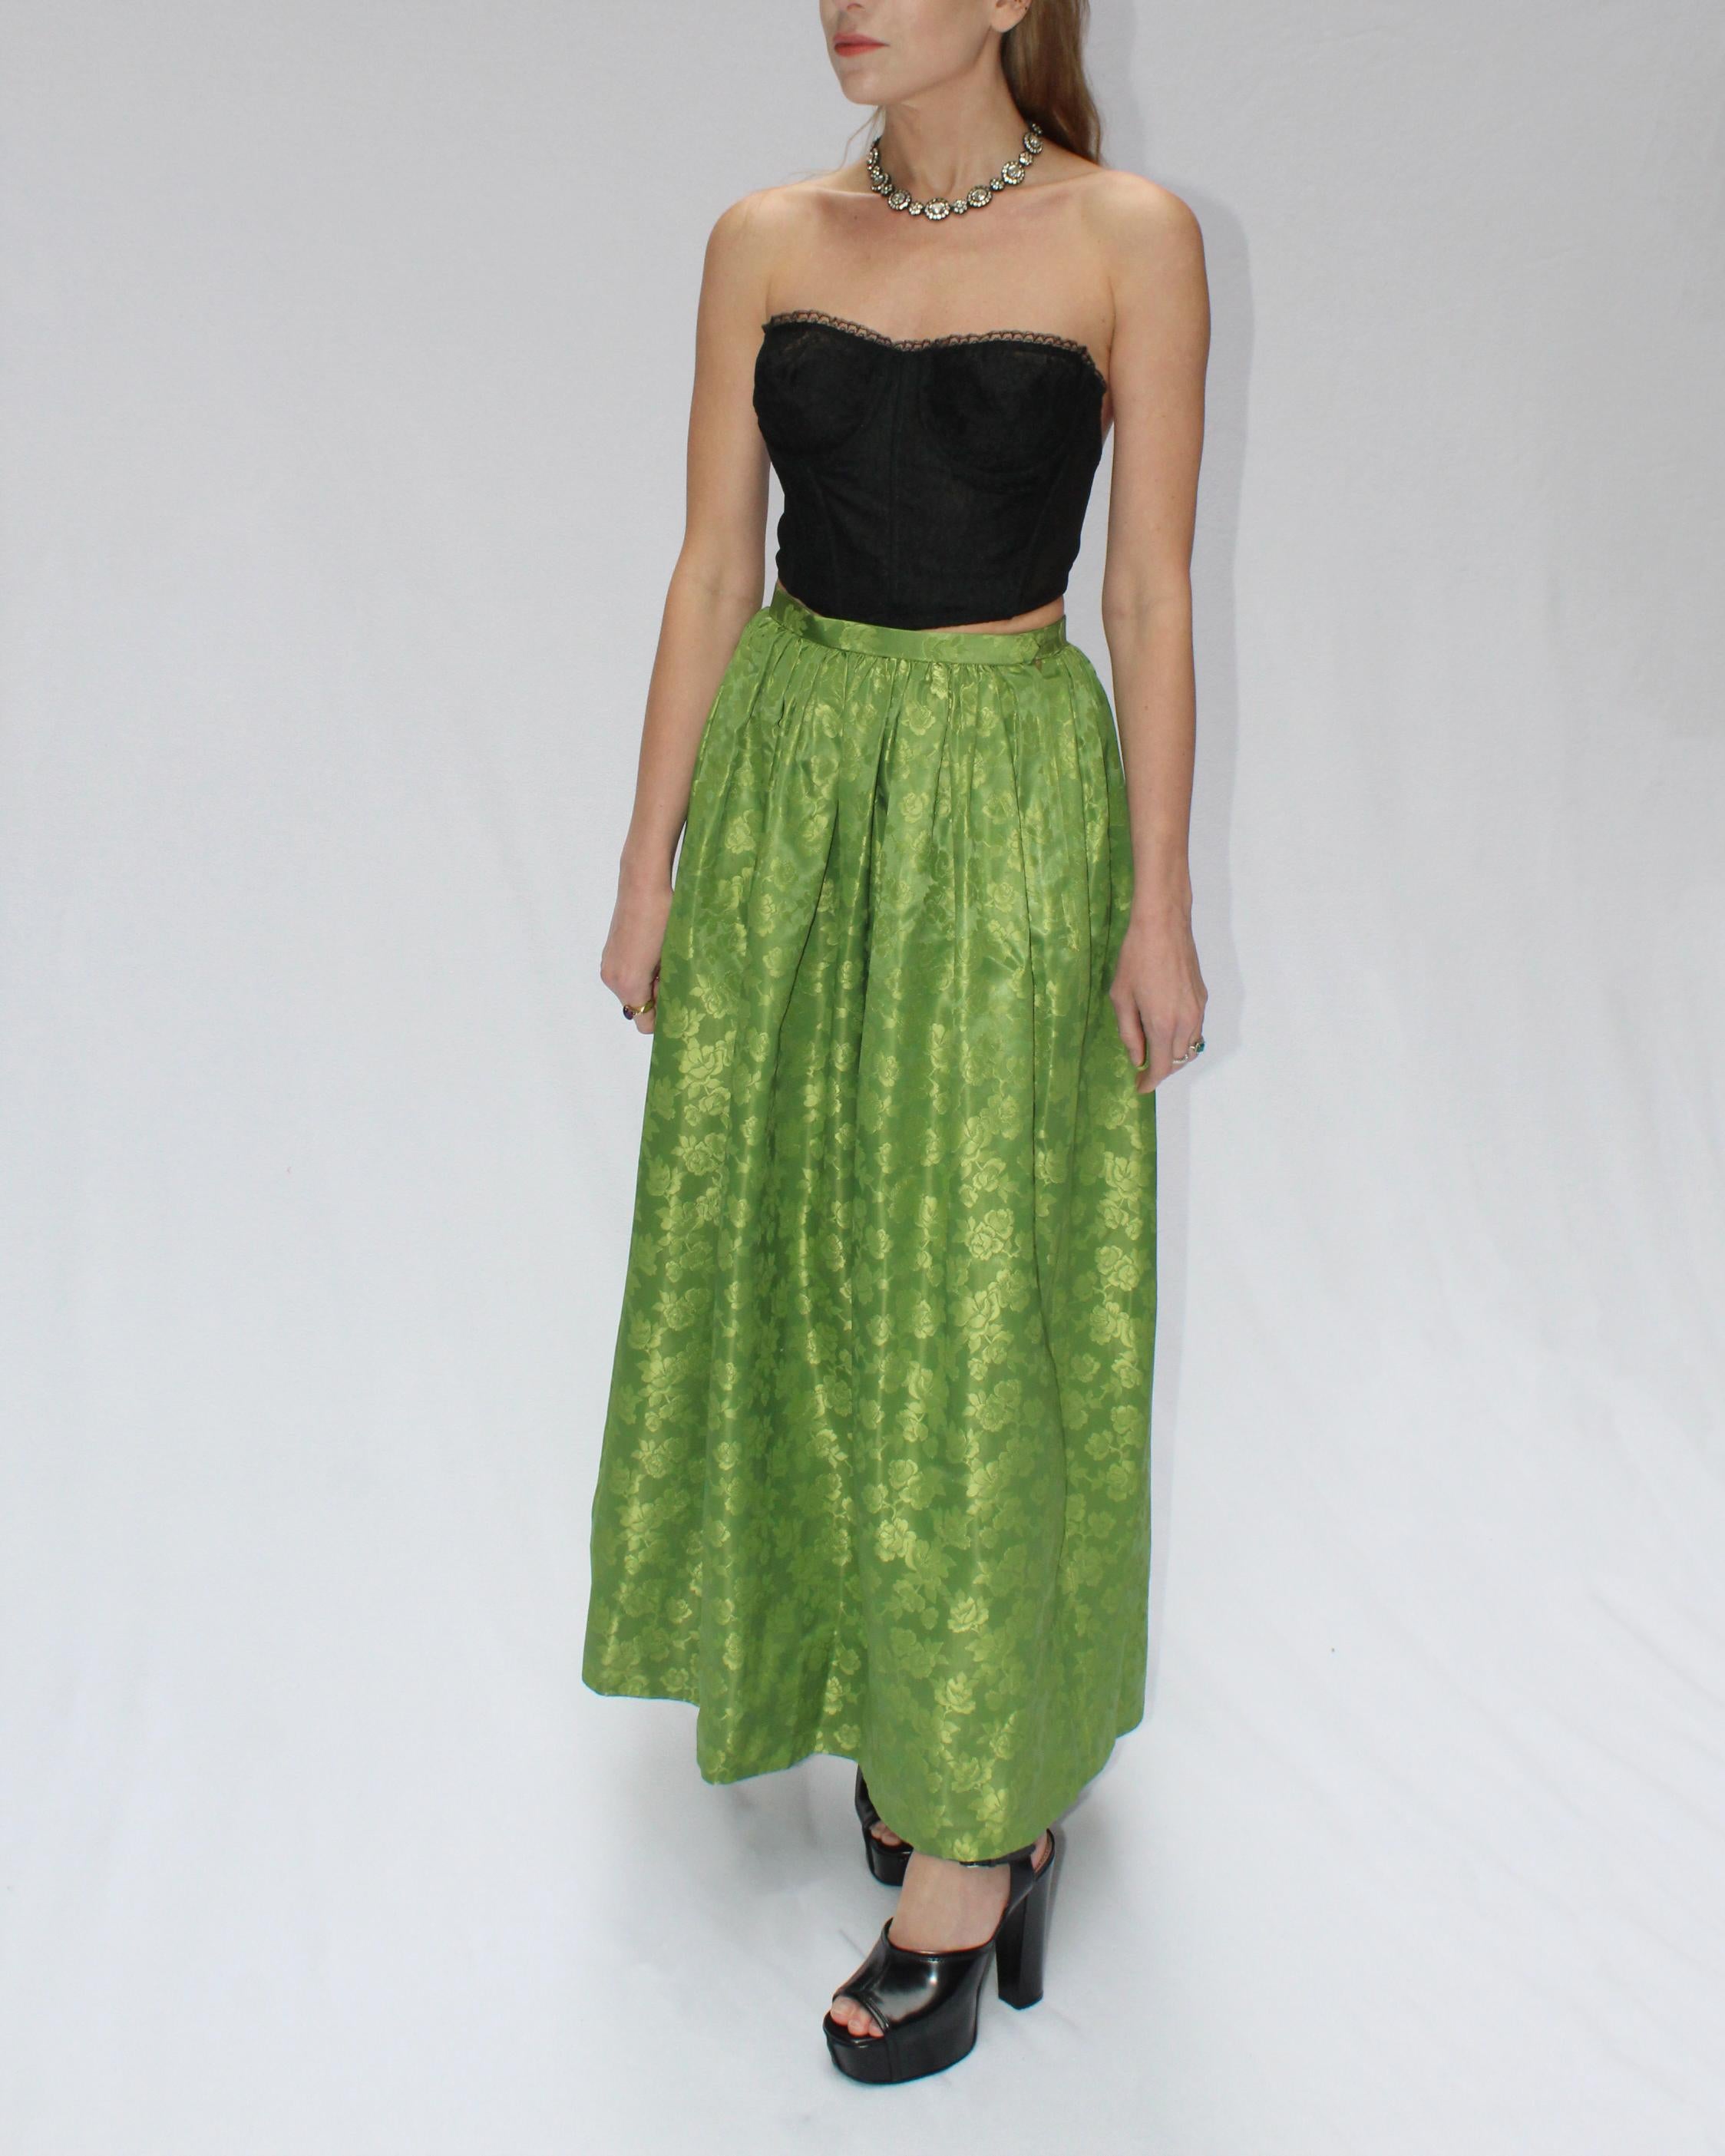 Women's 1950s Green Brocade Ballskirt